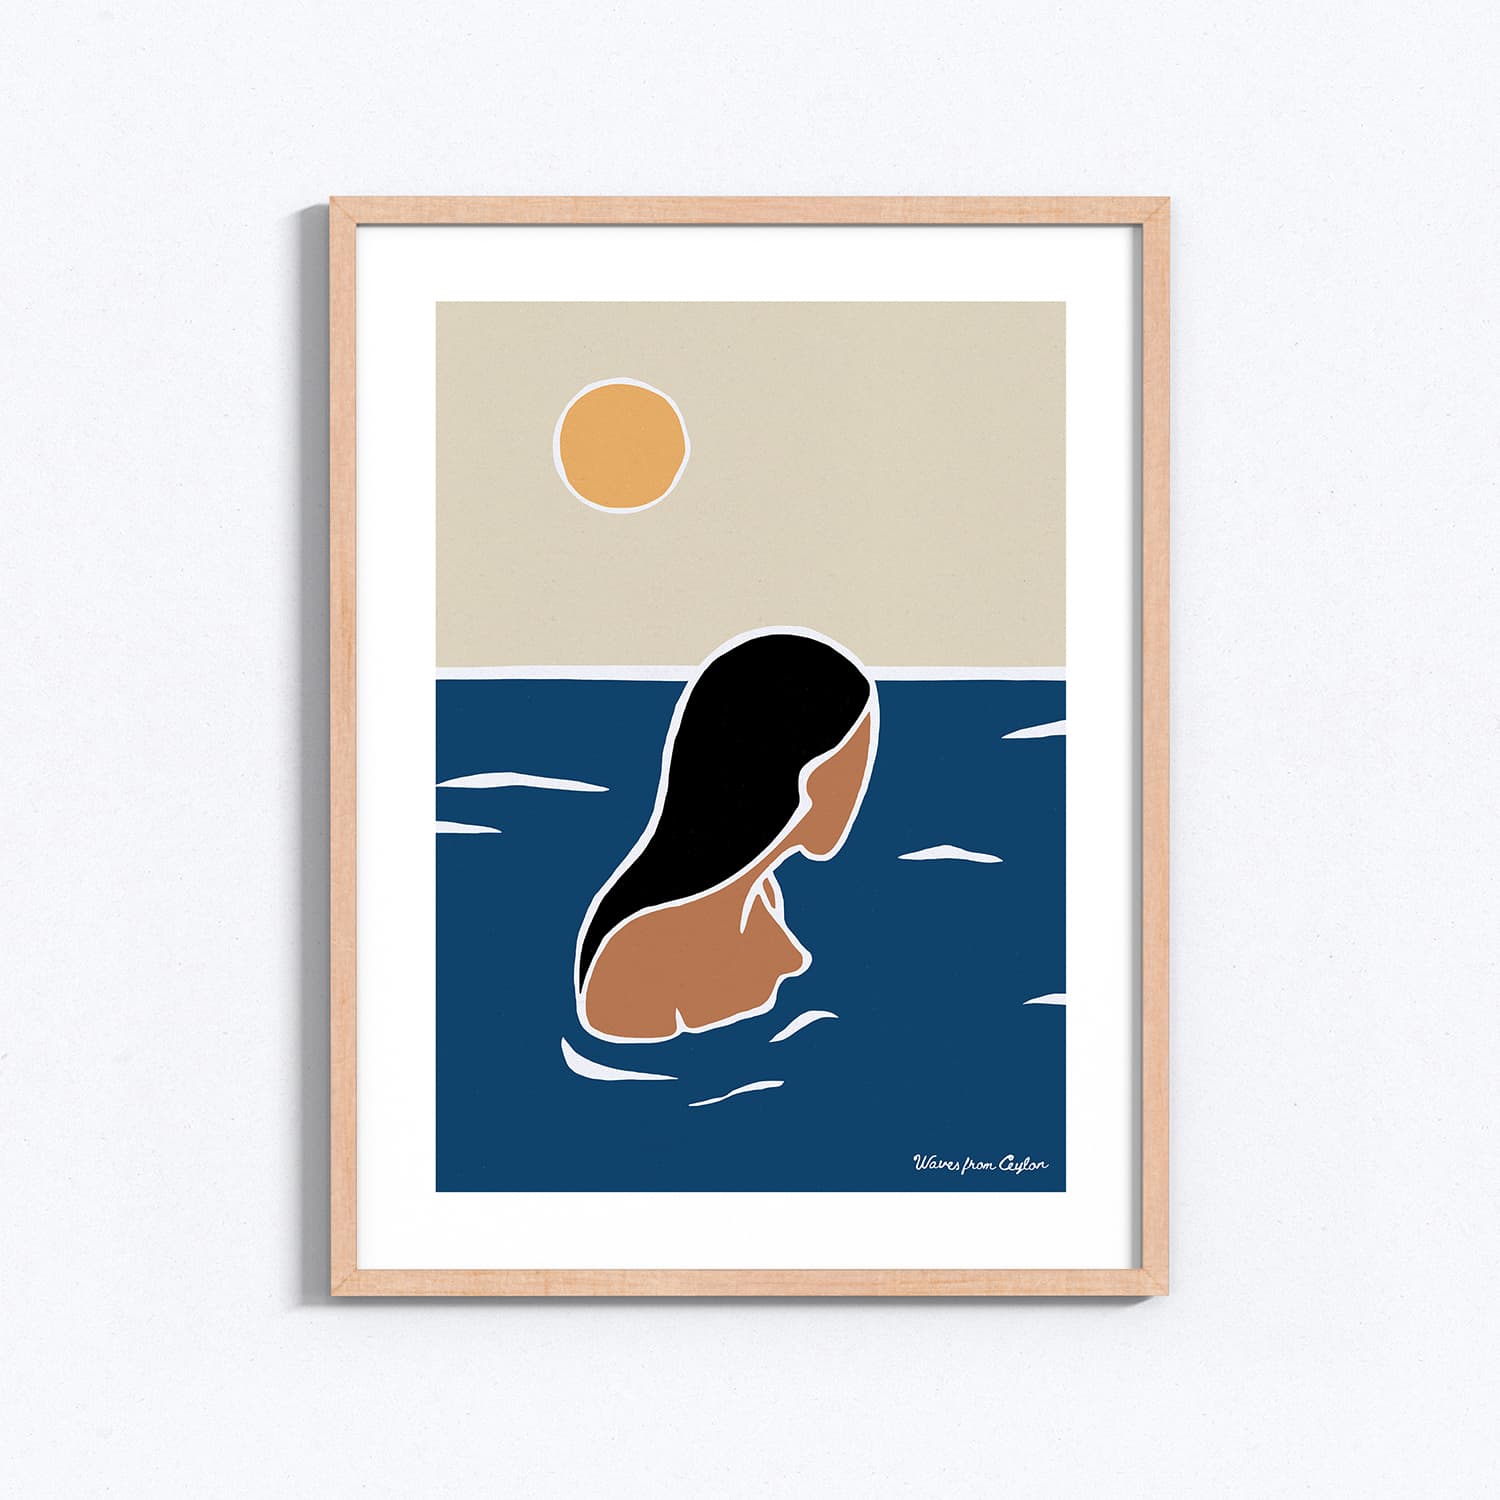 No surf today - Ilustración - Waves from Ceylon